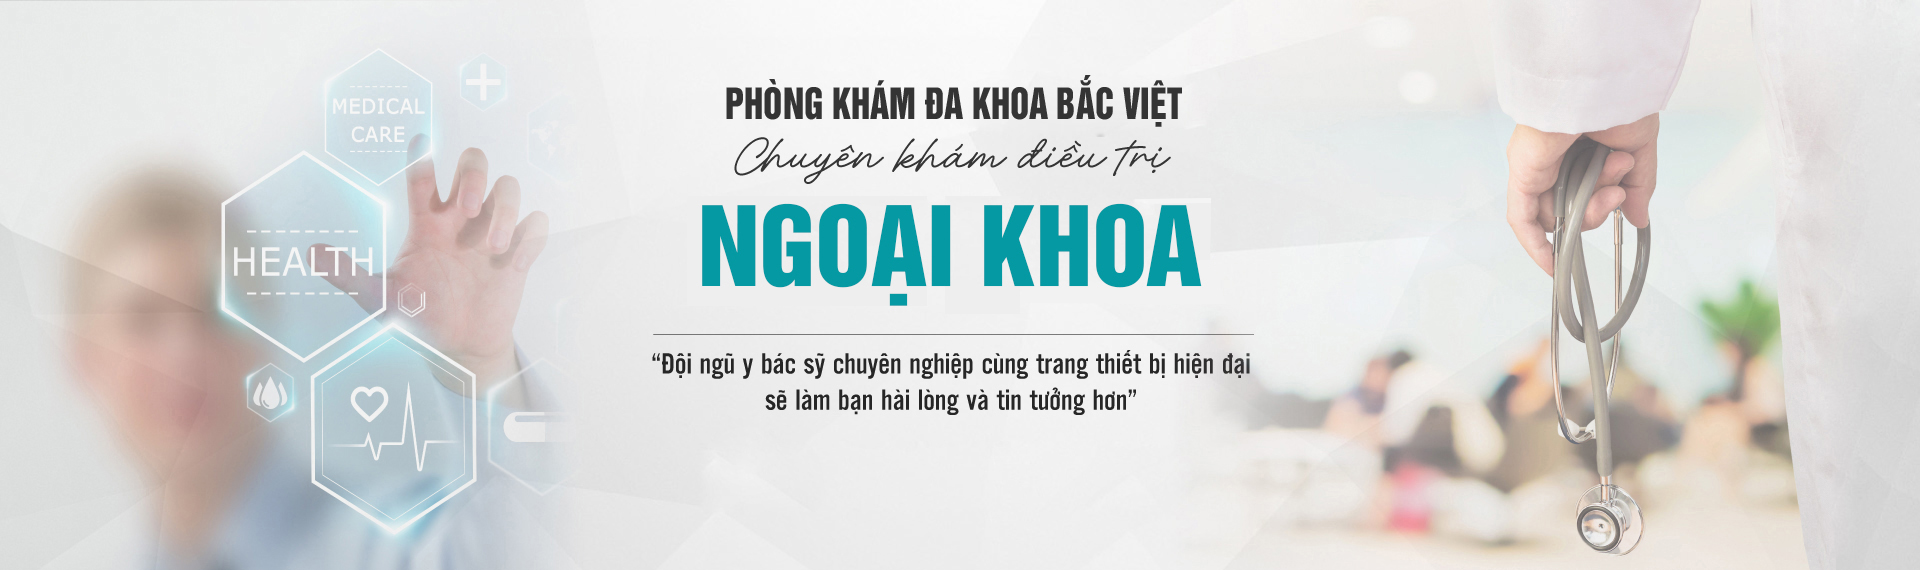 6 thế mạnh đánh giá chất lượng phòng khám đa khoa Bắc Việt Hà Nội